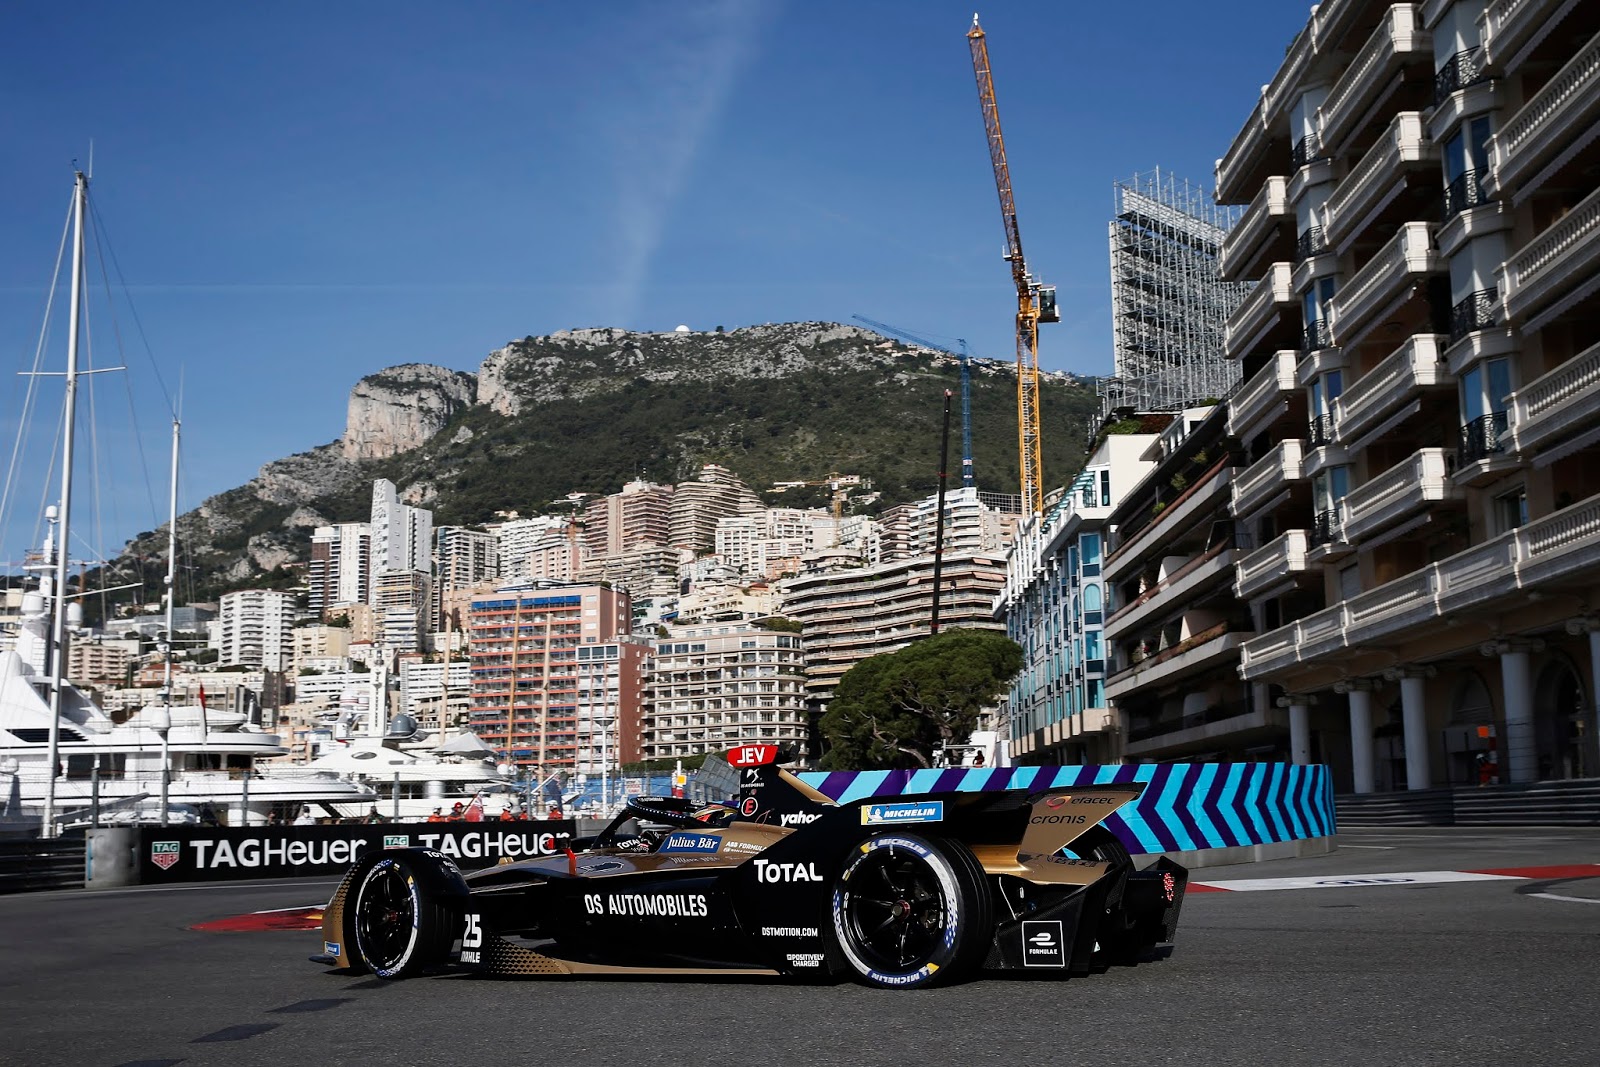 JEV2B9 1 Invincible beim E-Prix von Monaco, DS Automobiles